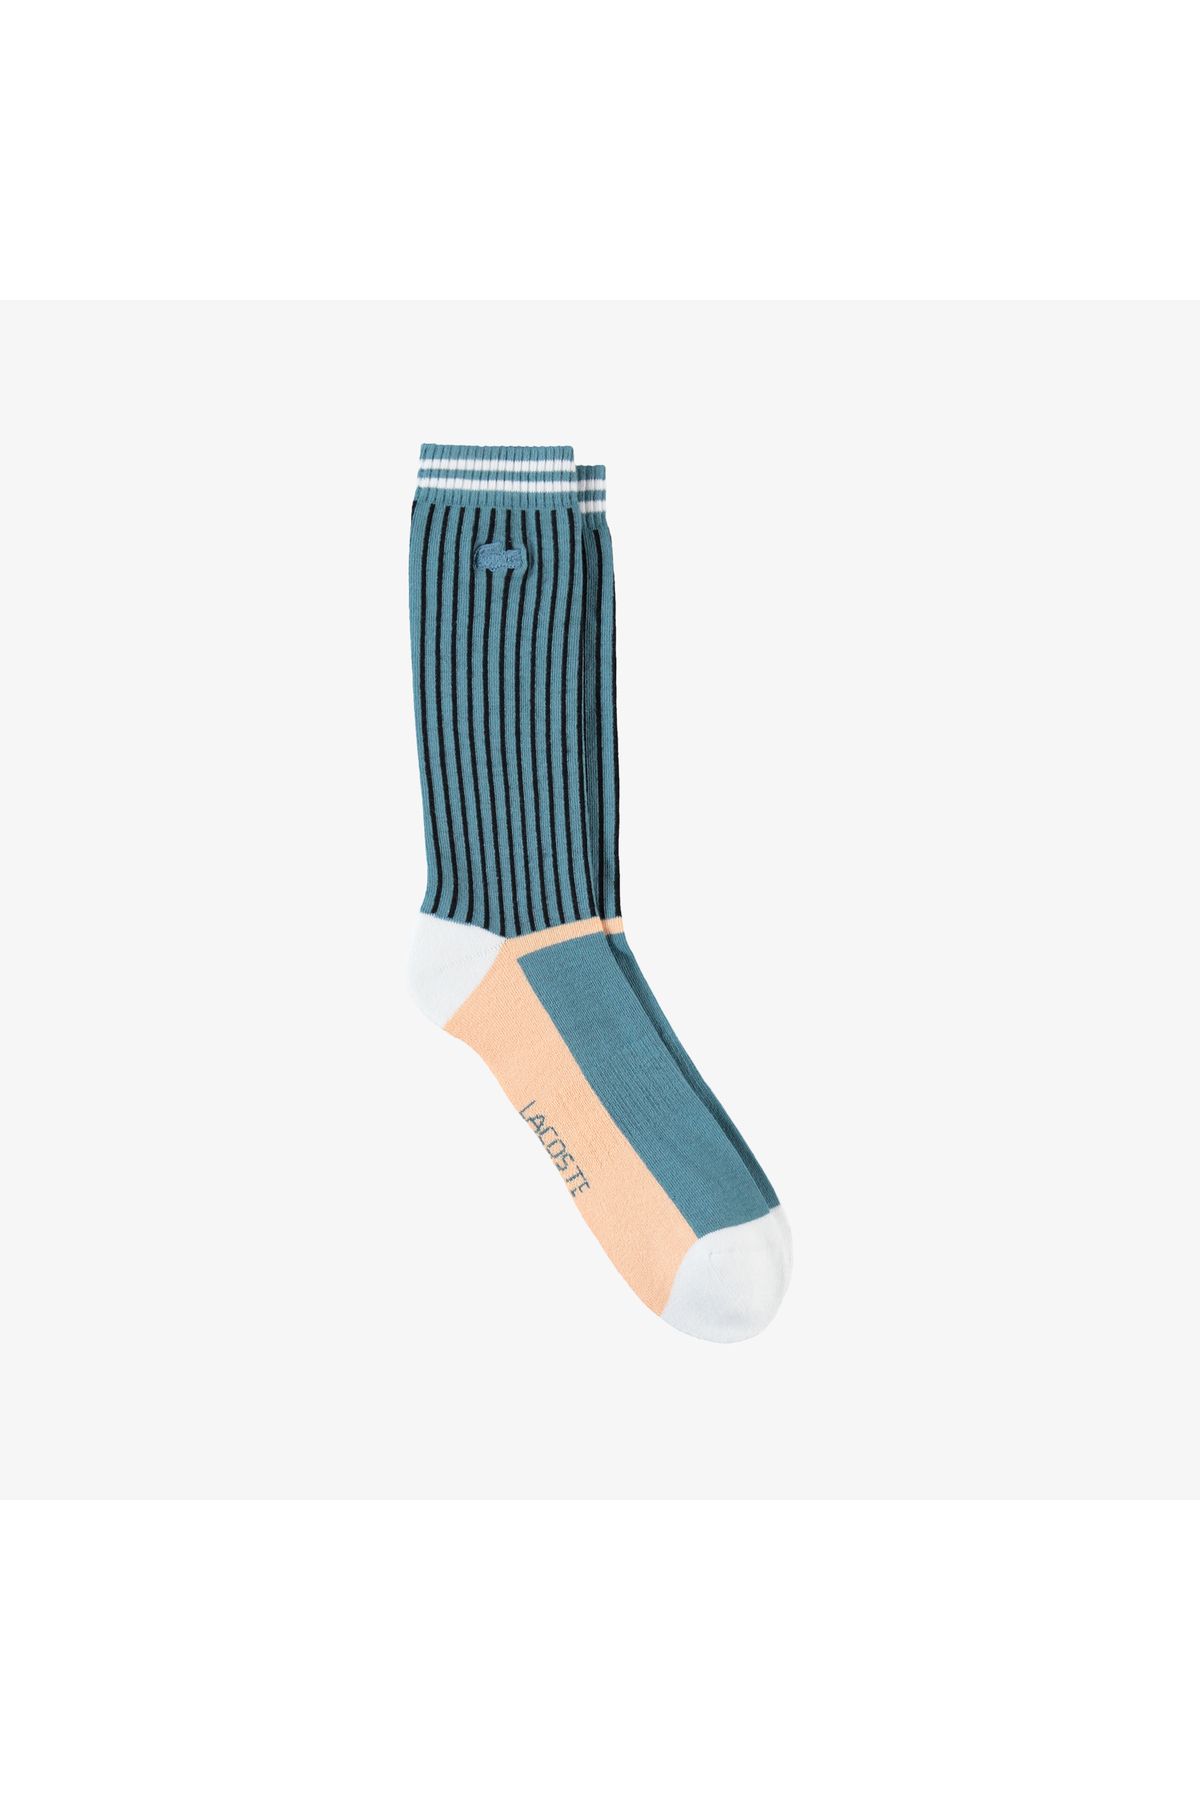 Lacoste Unisex Renk Bloklu Renkli Çorap